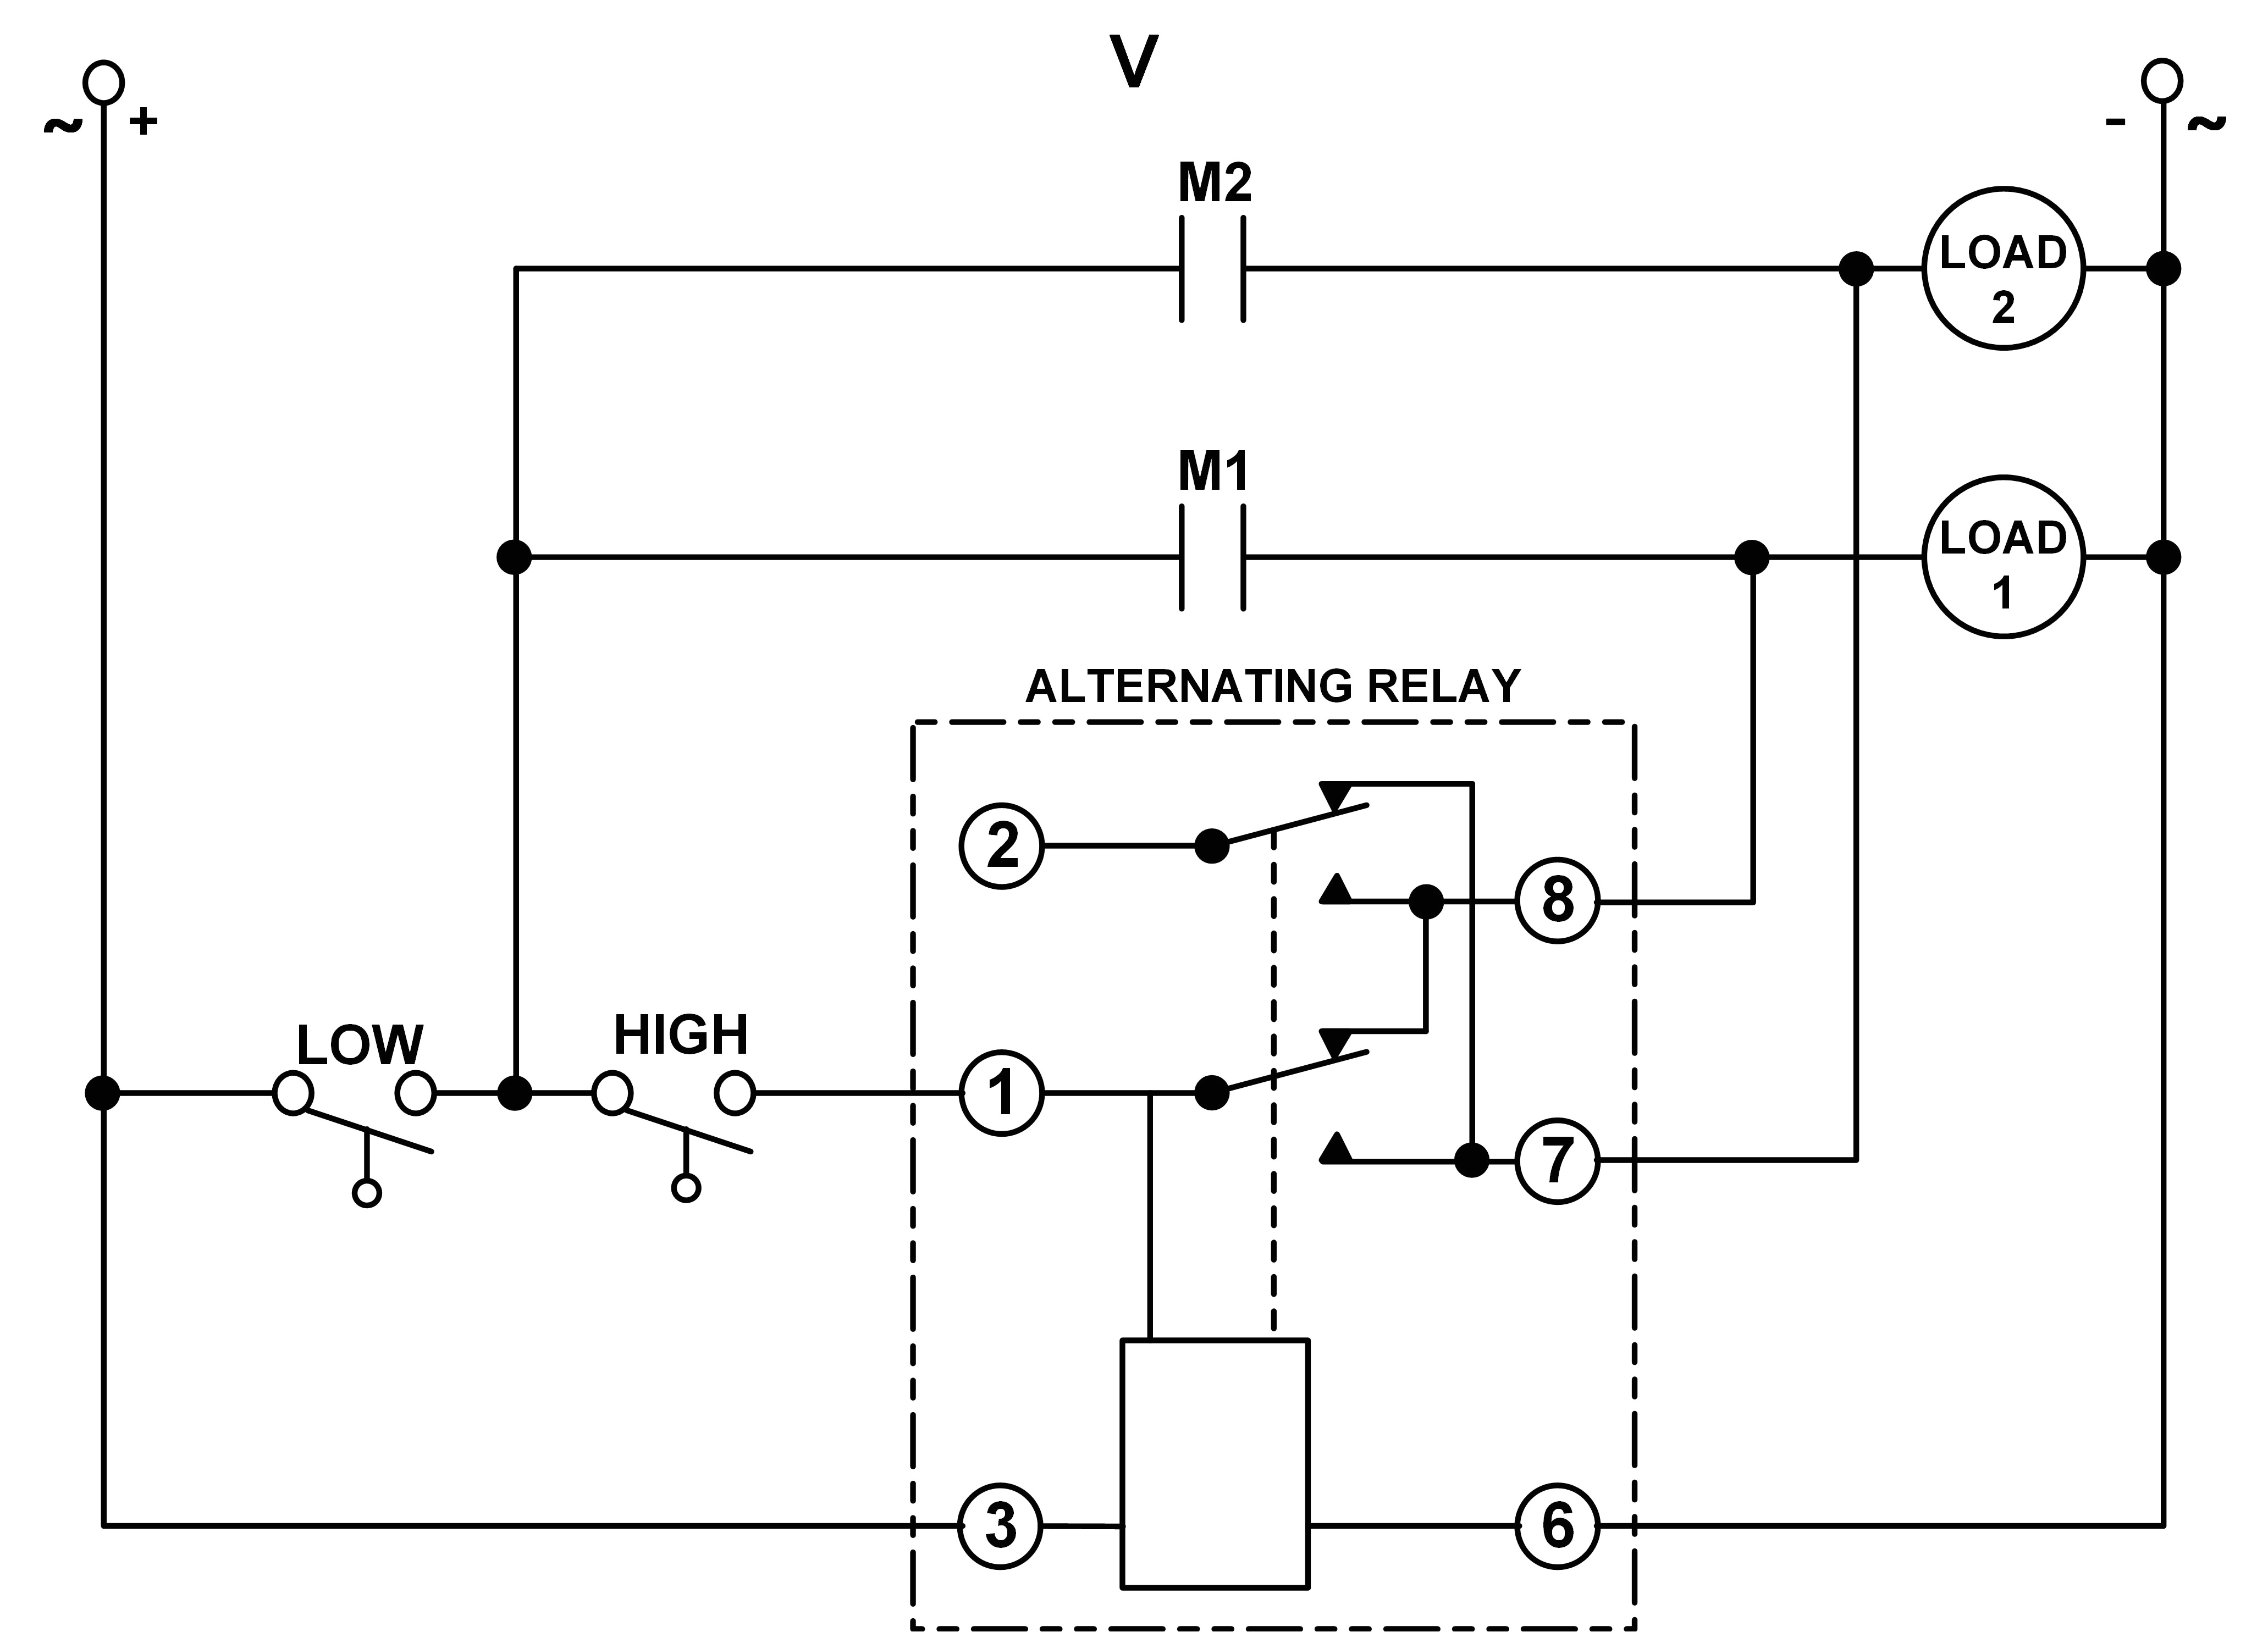 alternating relay wiring diagram blog wiring diagram using dpdt cross wired alternating relays with high low